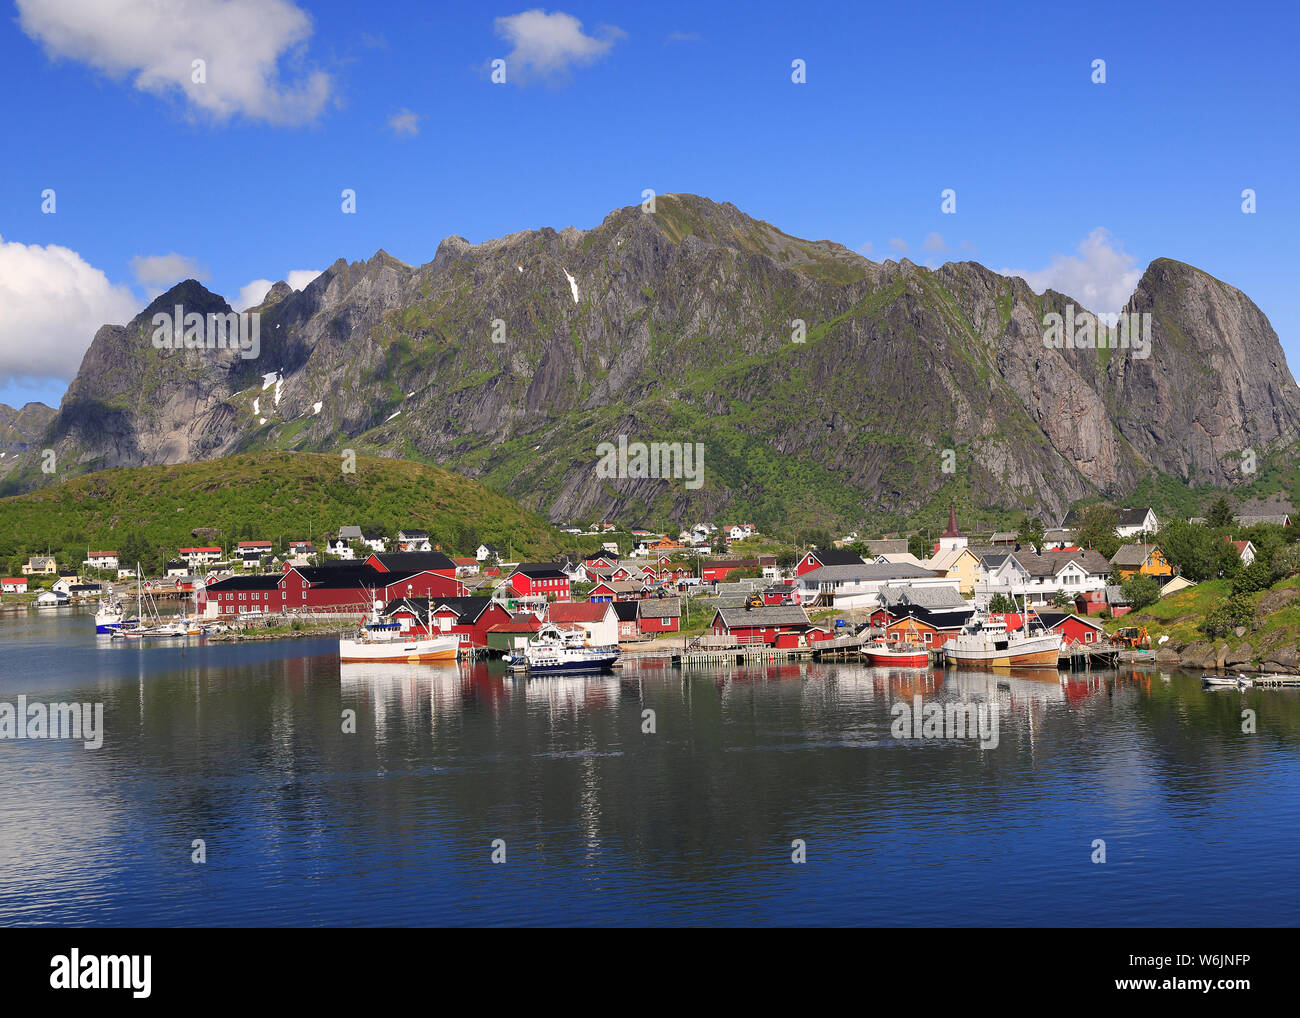 Scenic view of Reine area, Lofoten Islands in Norway Stock Photo